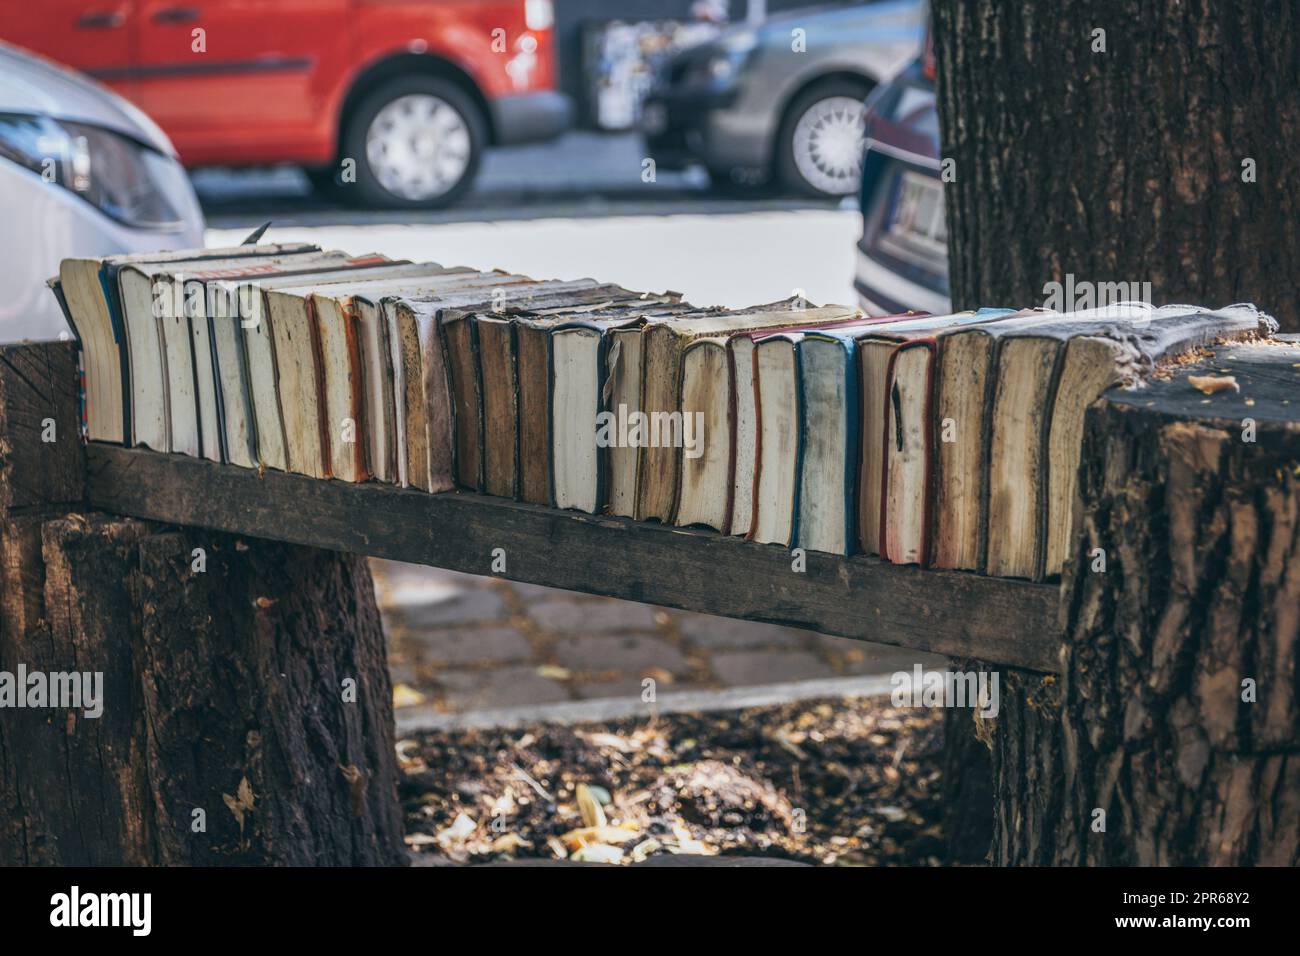 Panca in legno in città coperta da vecchi libri schiacciati Foto Stock